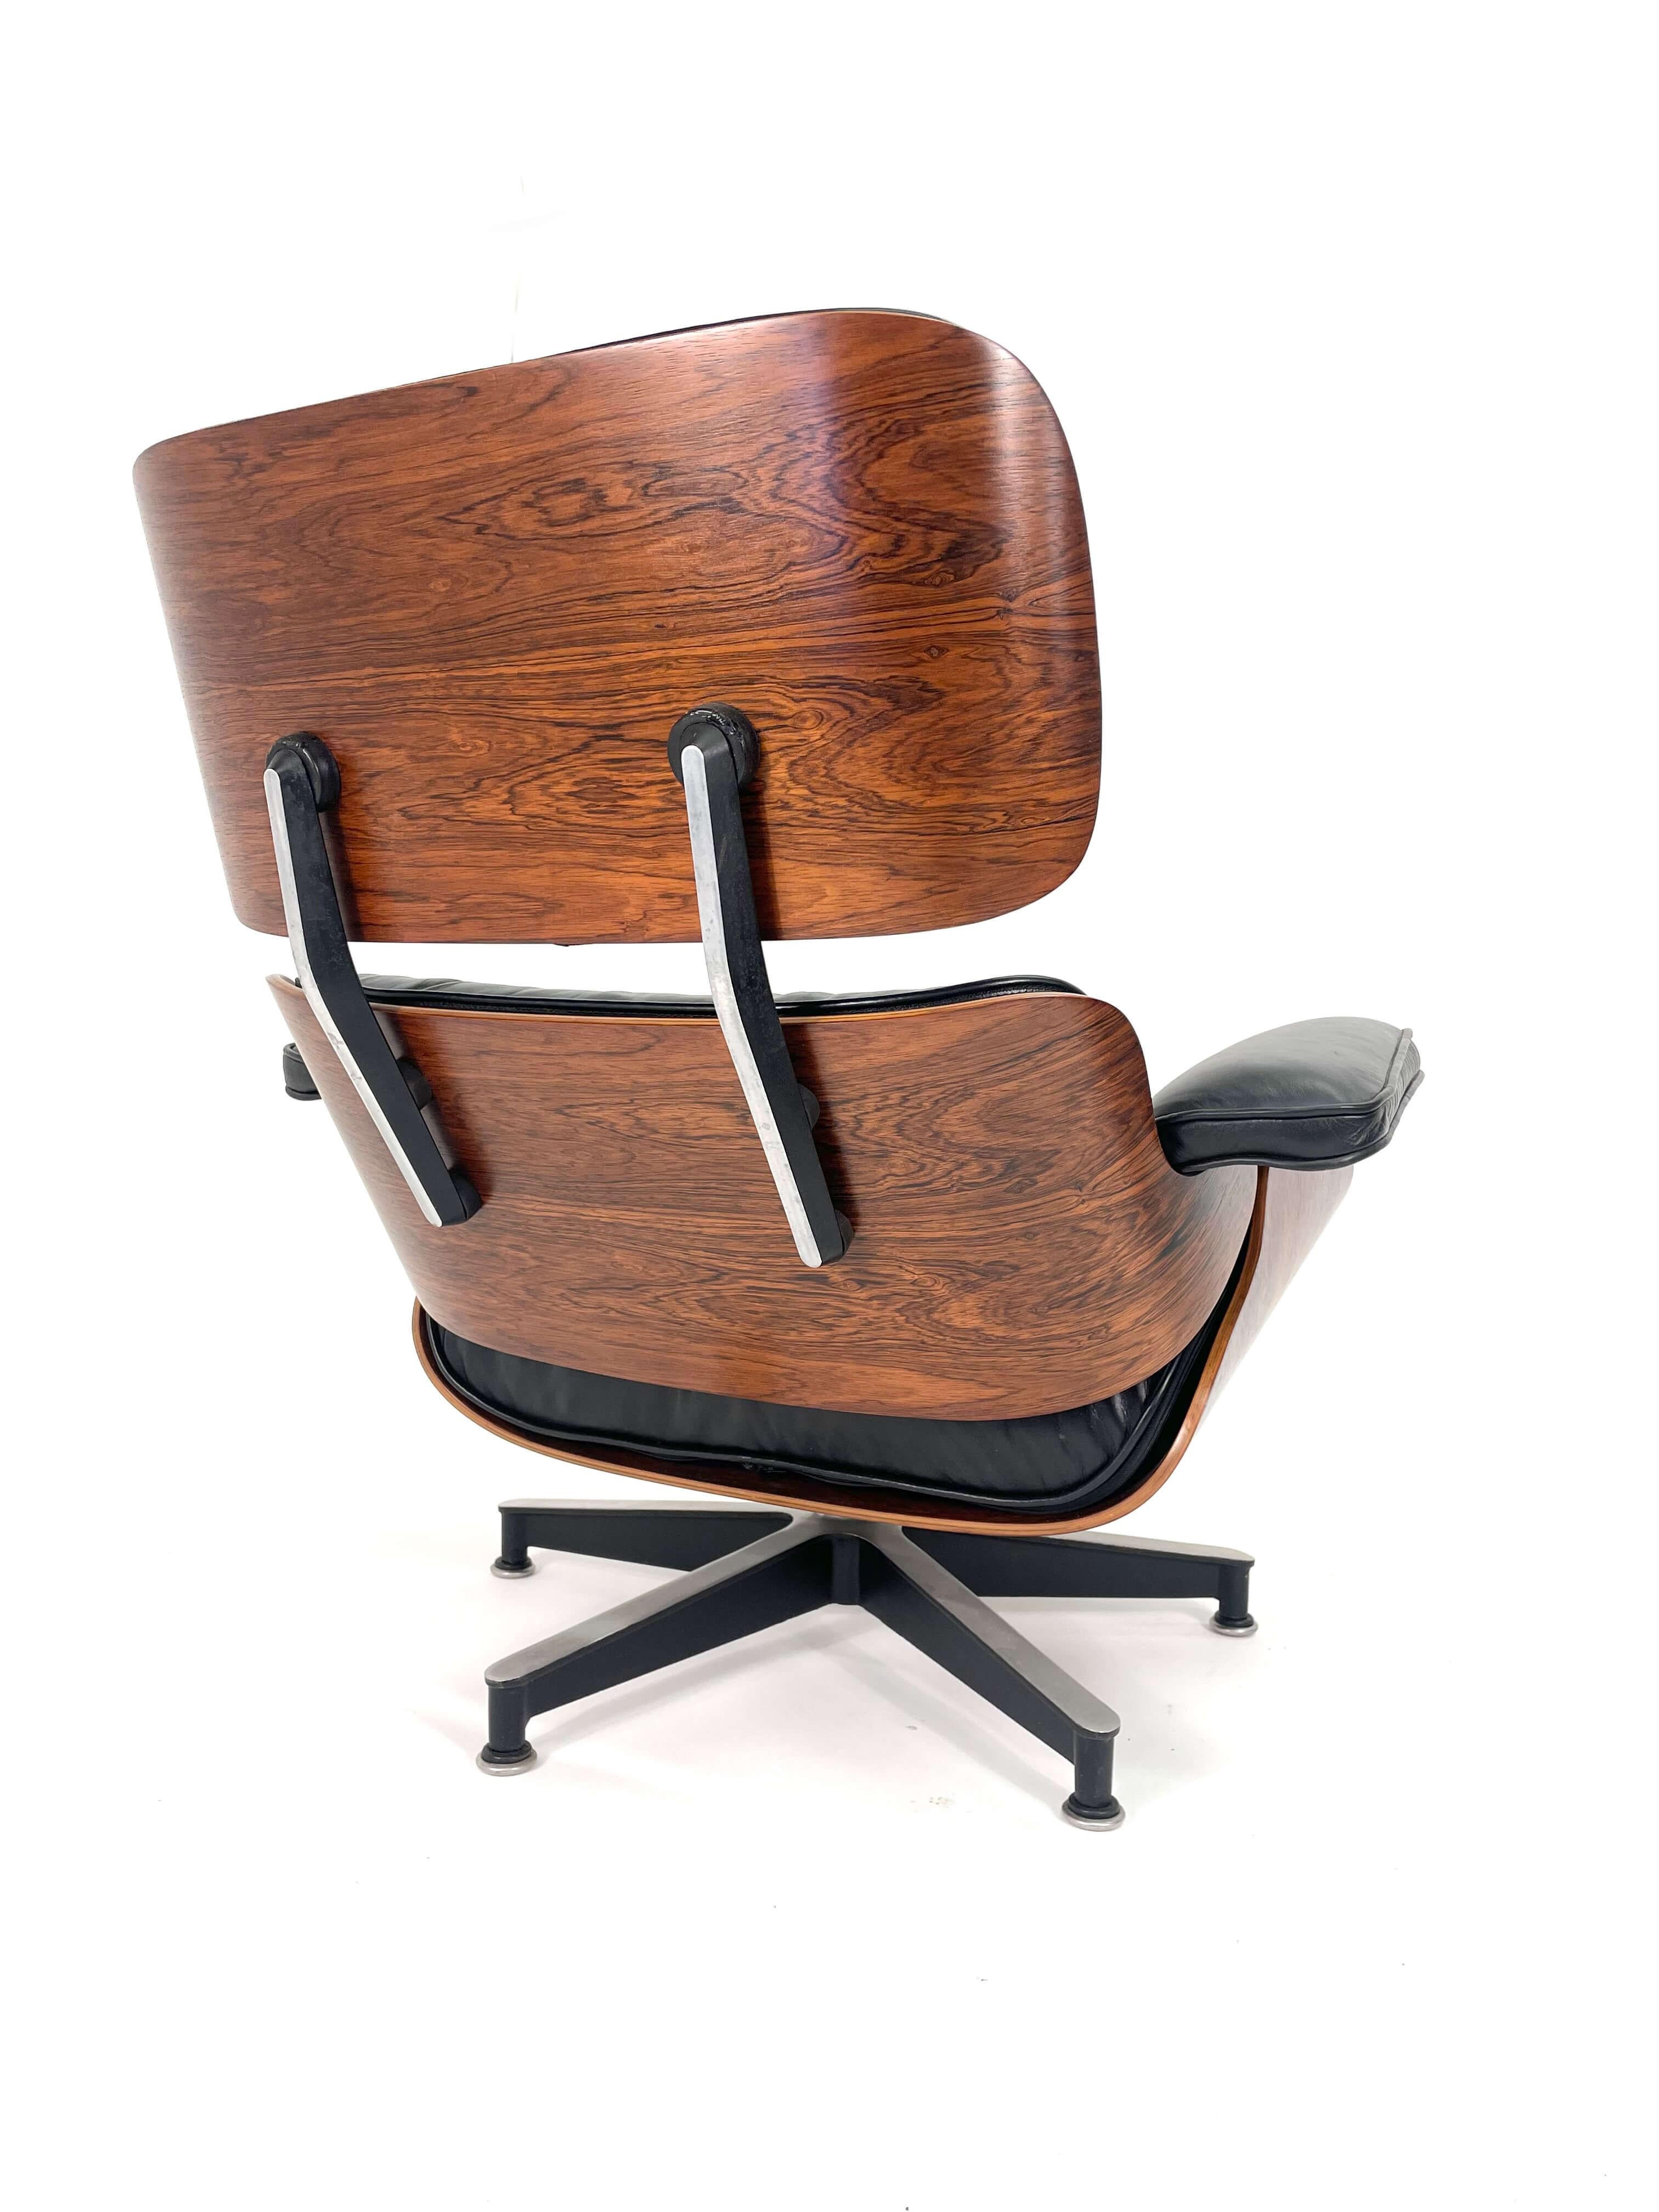 Cuir Chaise longue et pouf Eames de 2ème génération en bois de rose, vers les années 1960